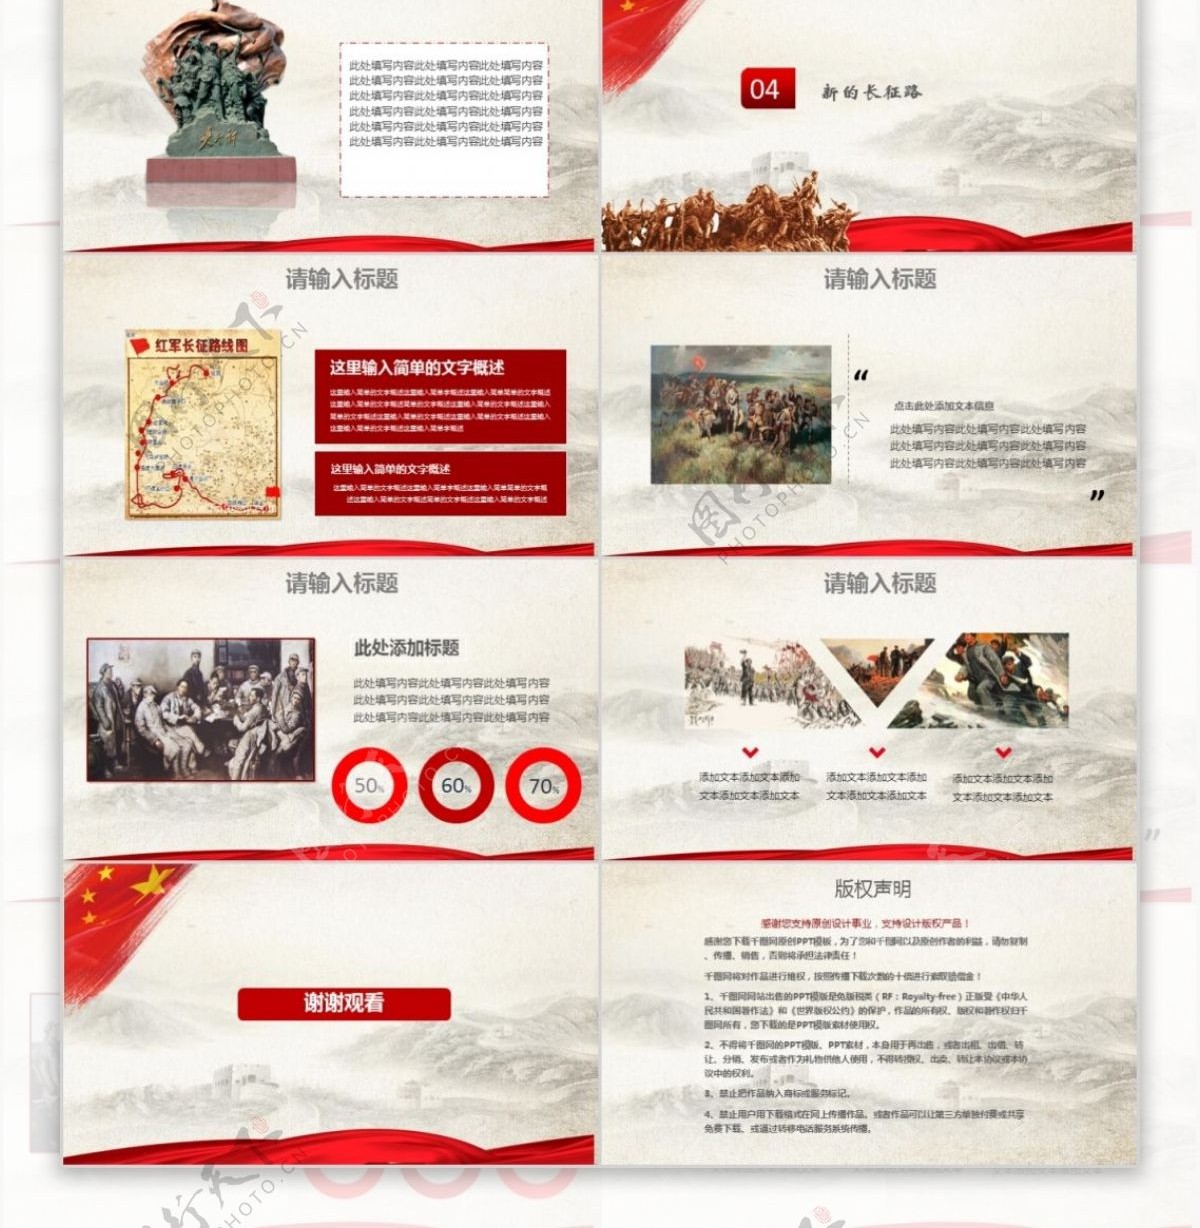 中国红军长征胜利81周年纪念ppt图片